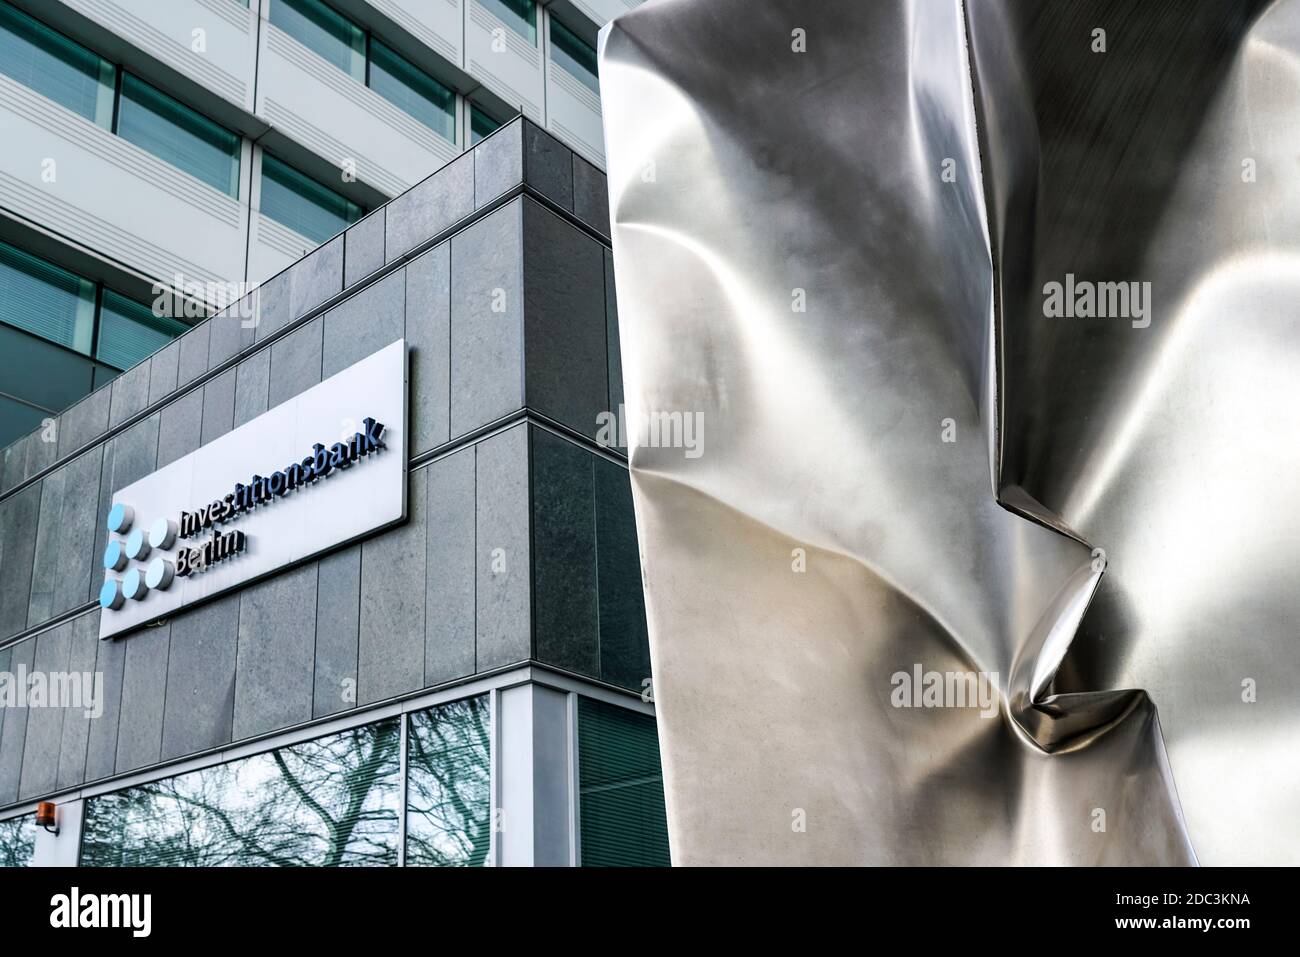 Hauptsitz Investionsbank Berlin an der Bundesallee Bezirk Wilmersdorf, IBB Foto de stock